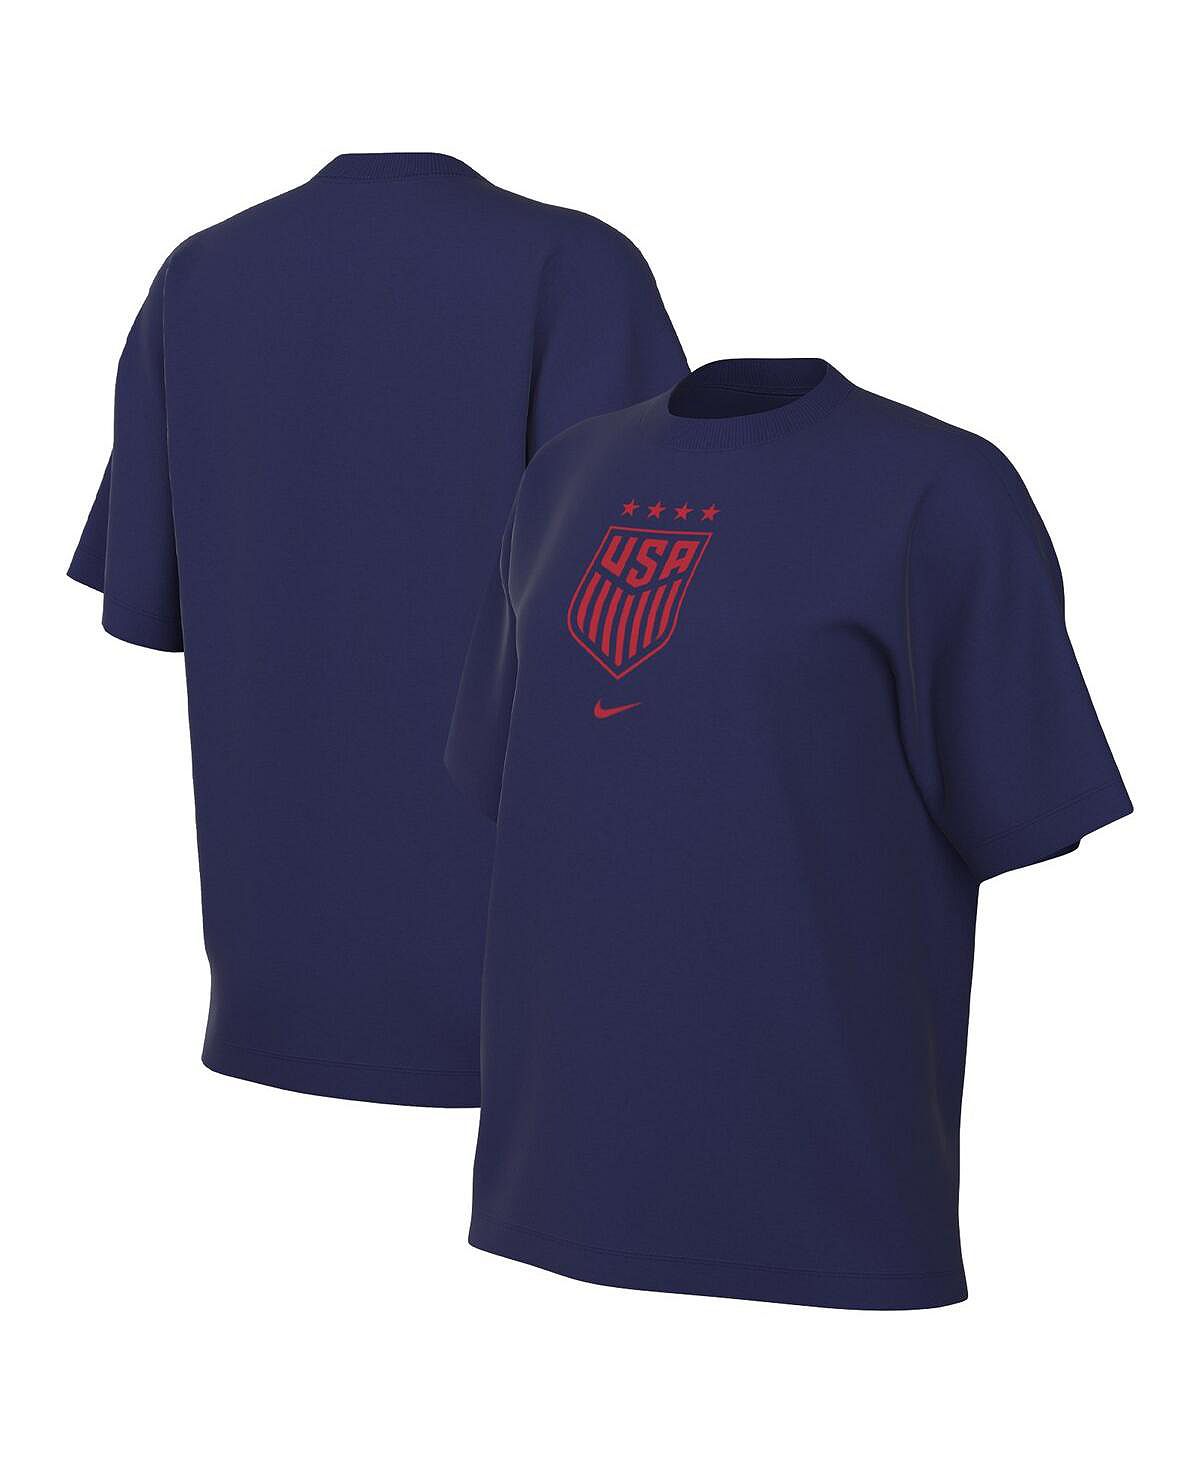 цена Женская темно-синяя футболка с гербом USWNT Nike, темно-синий